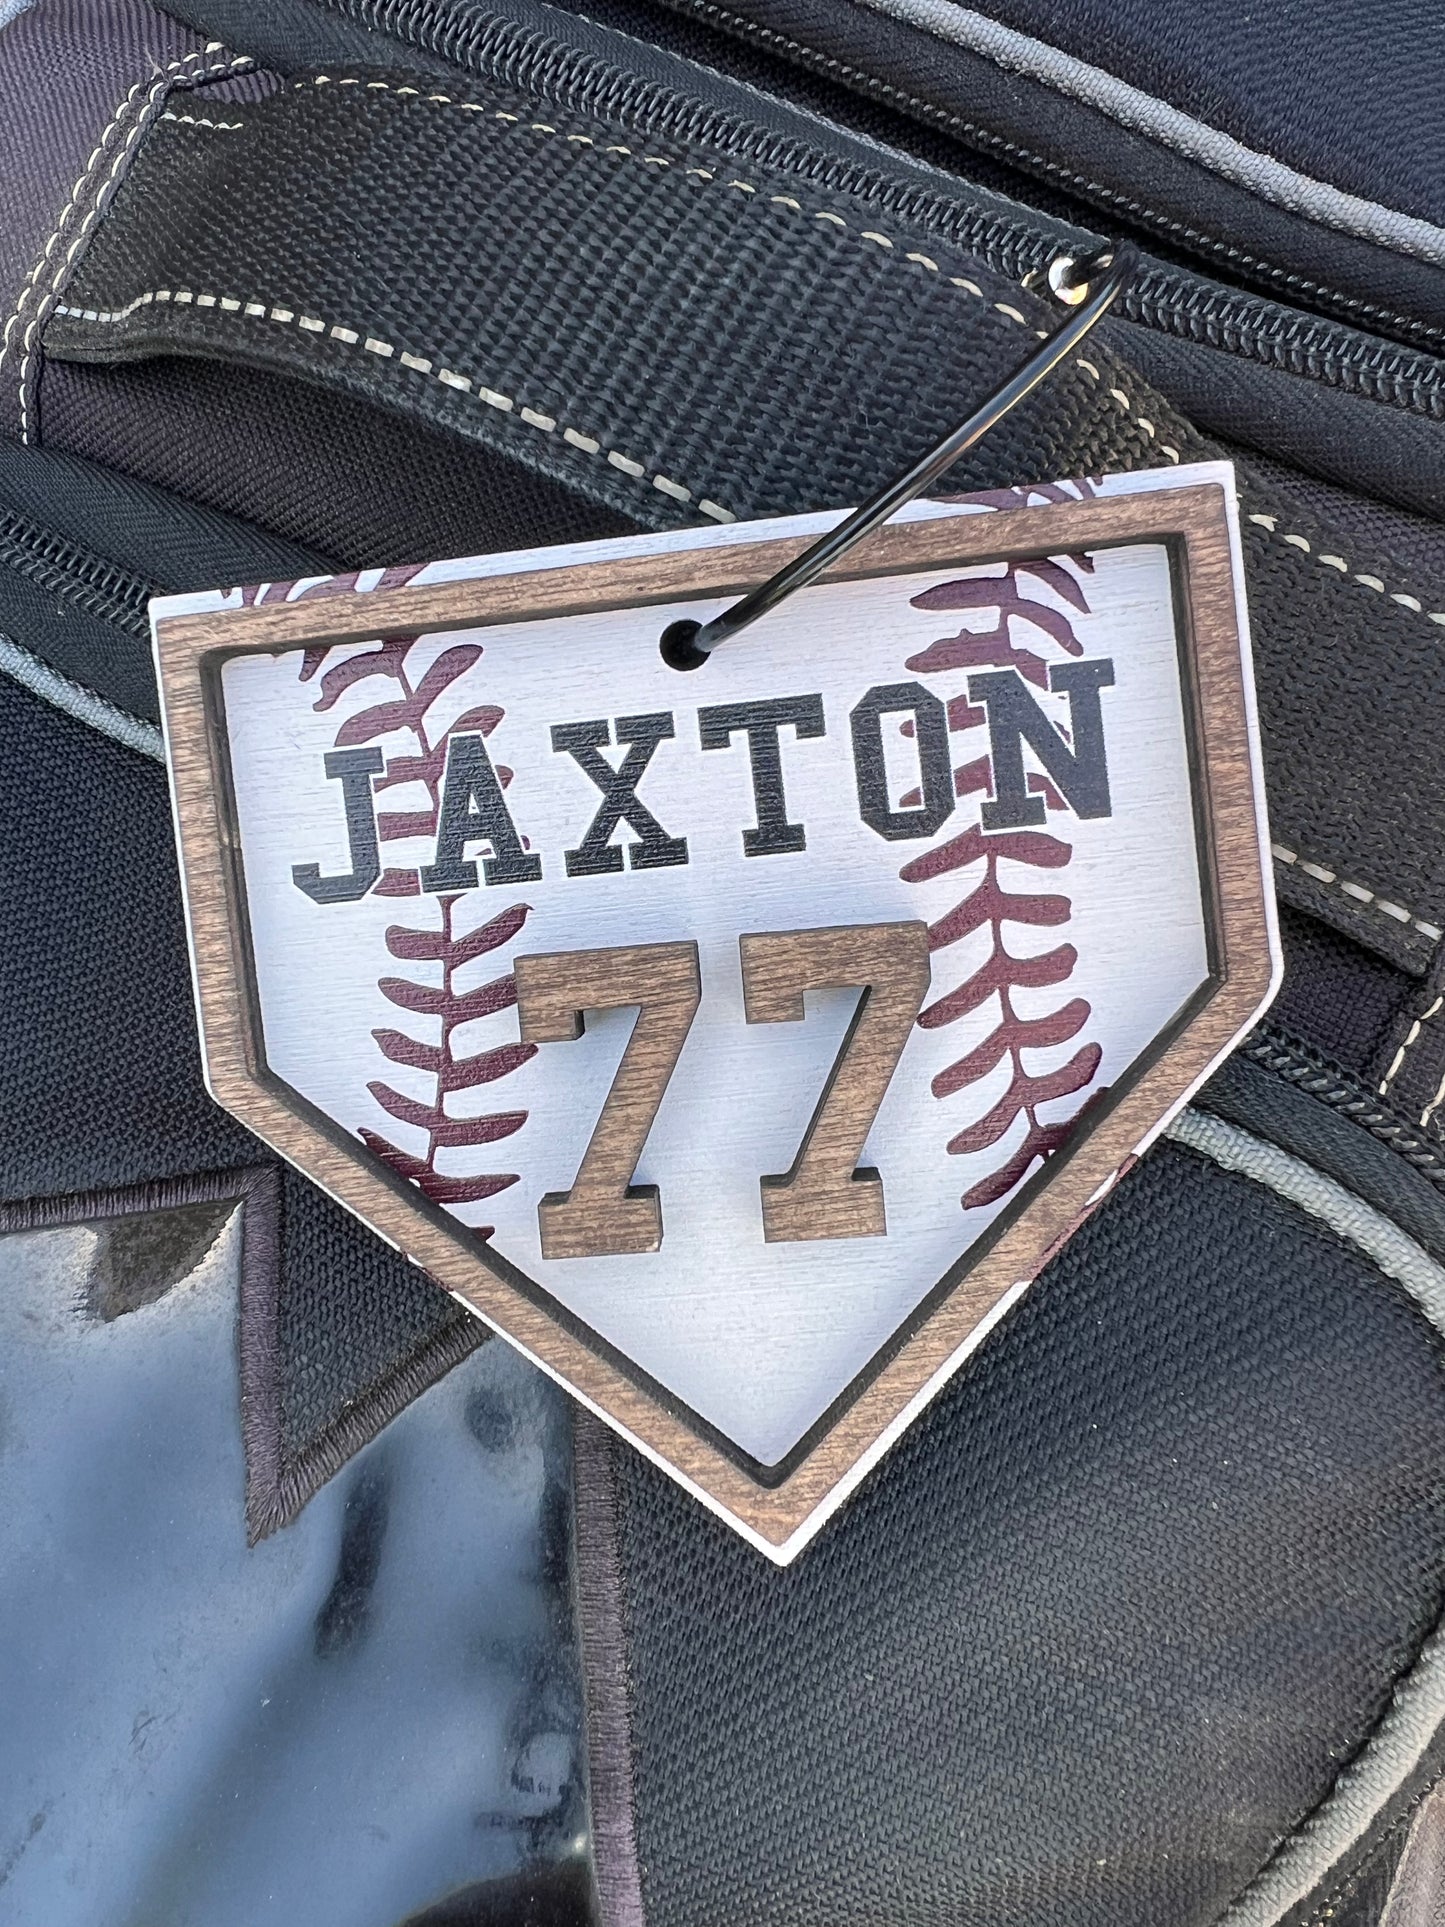 Baseball bag name tag, softball bag tag, home plate